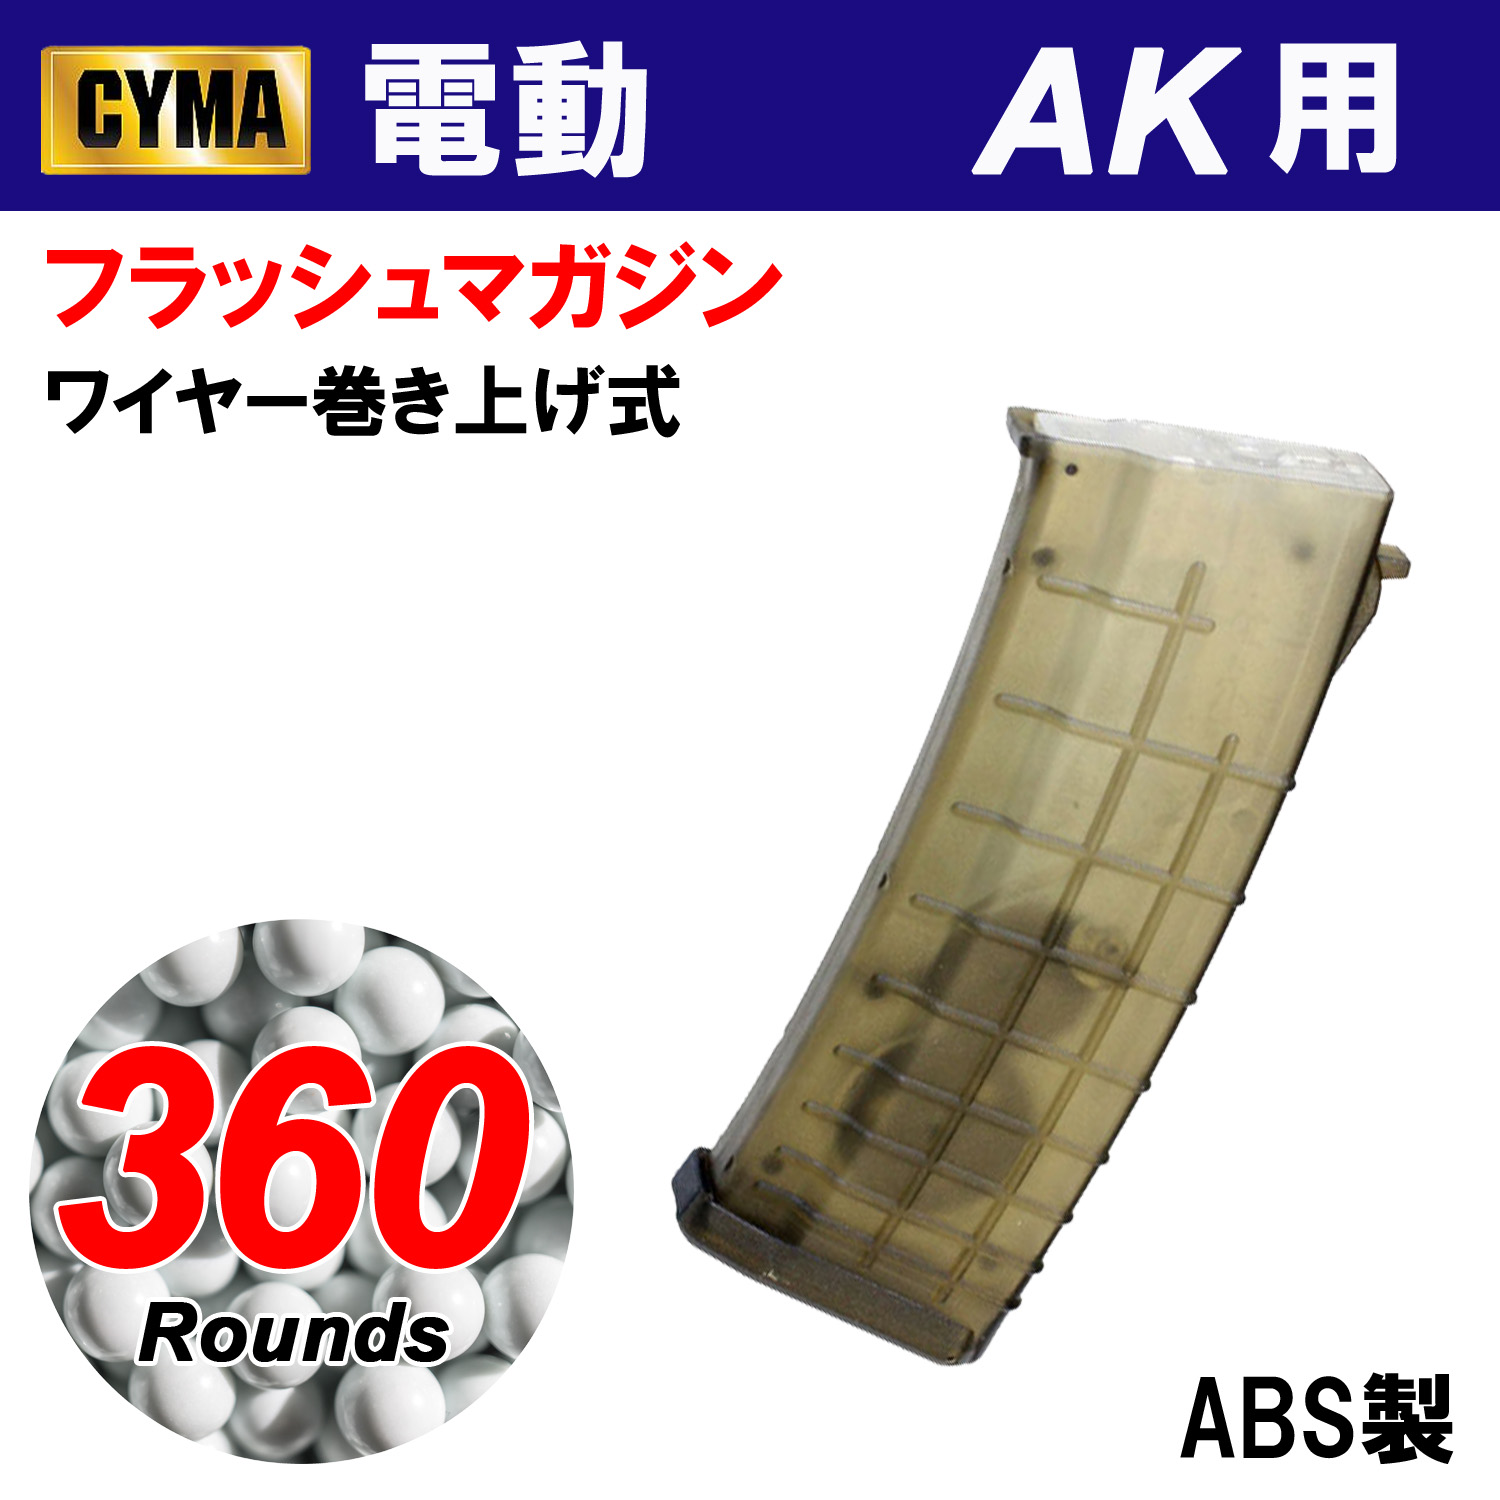 CYMA C106L 各社スタンダードAK対応360連マガジン